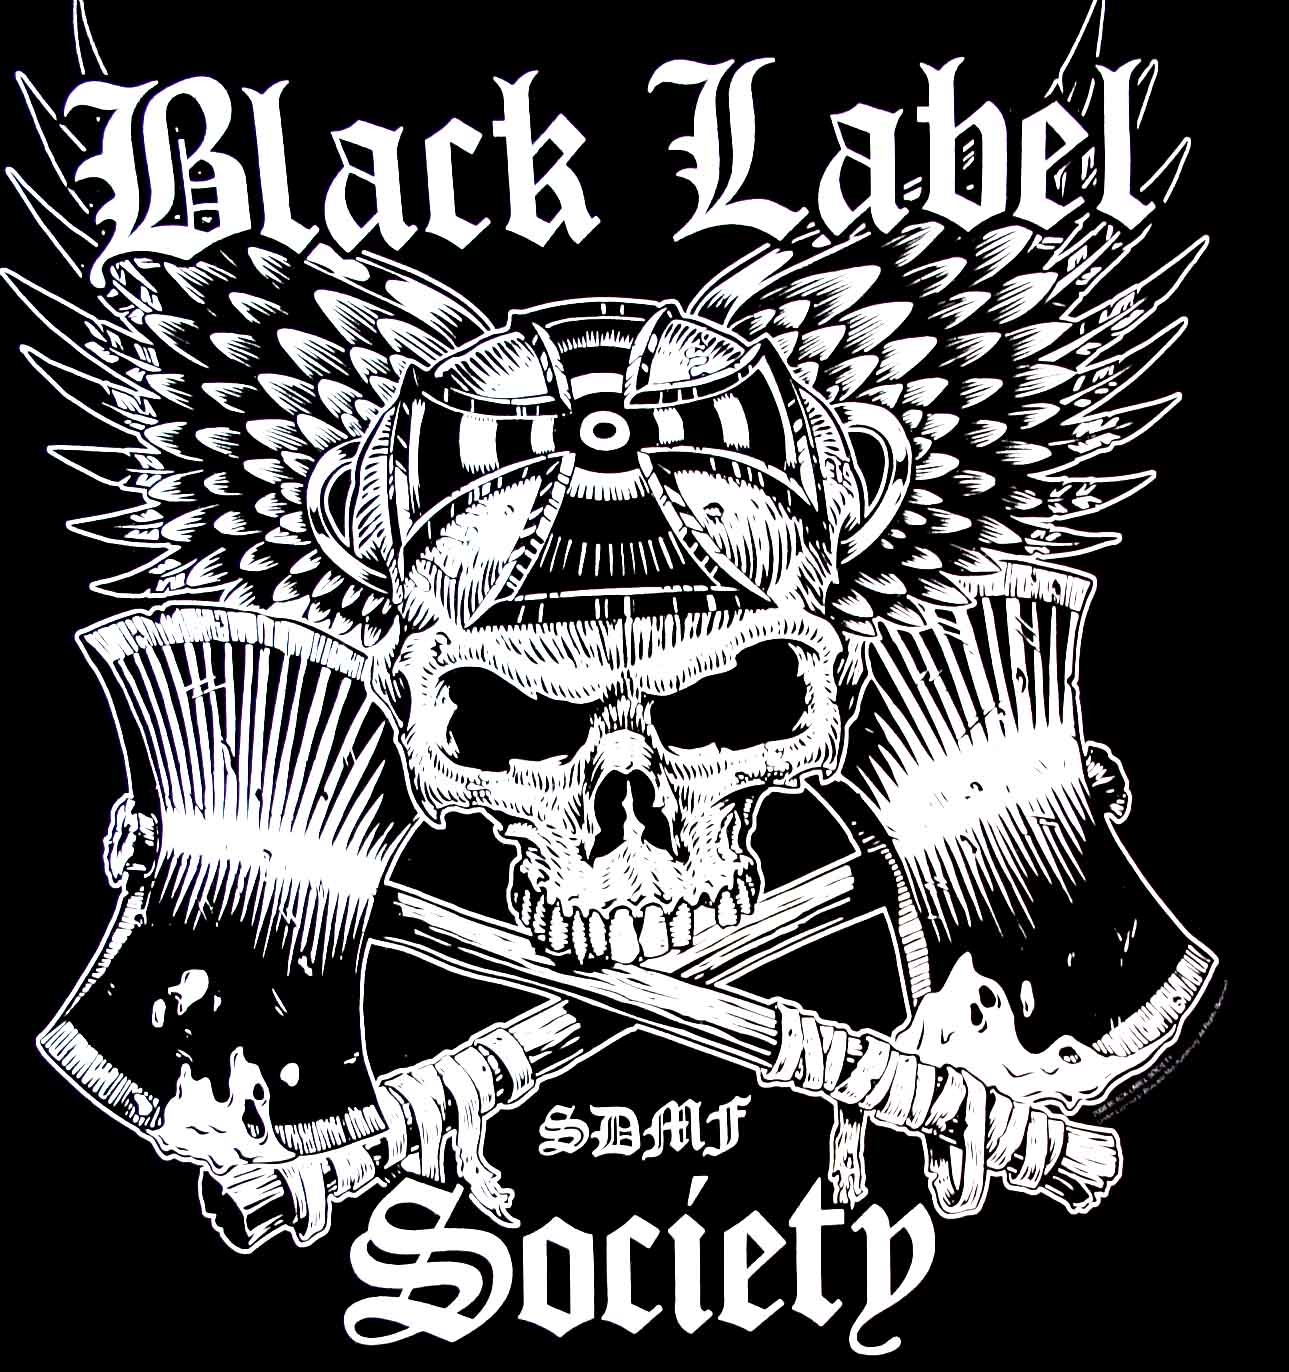 Download Gambar Wallpaper Hd Black Label Society terbaru 2020